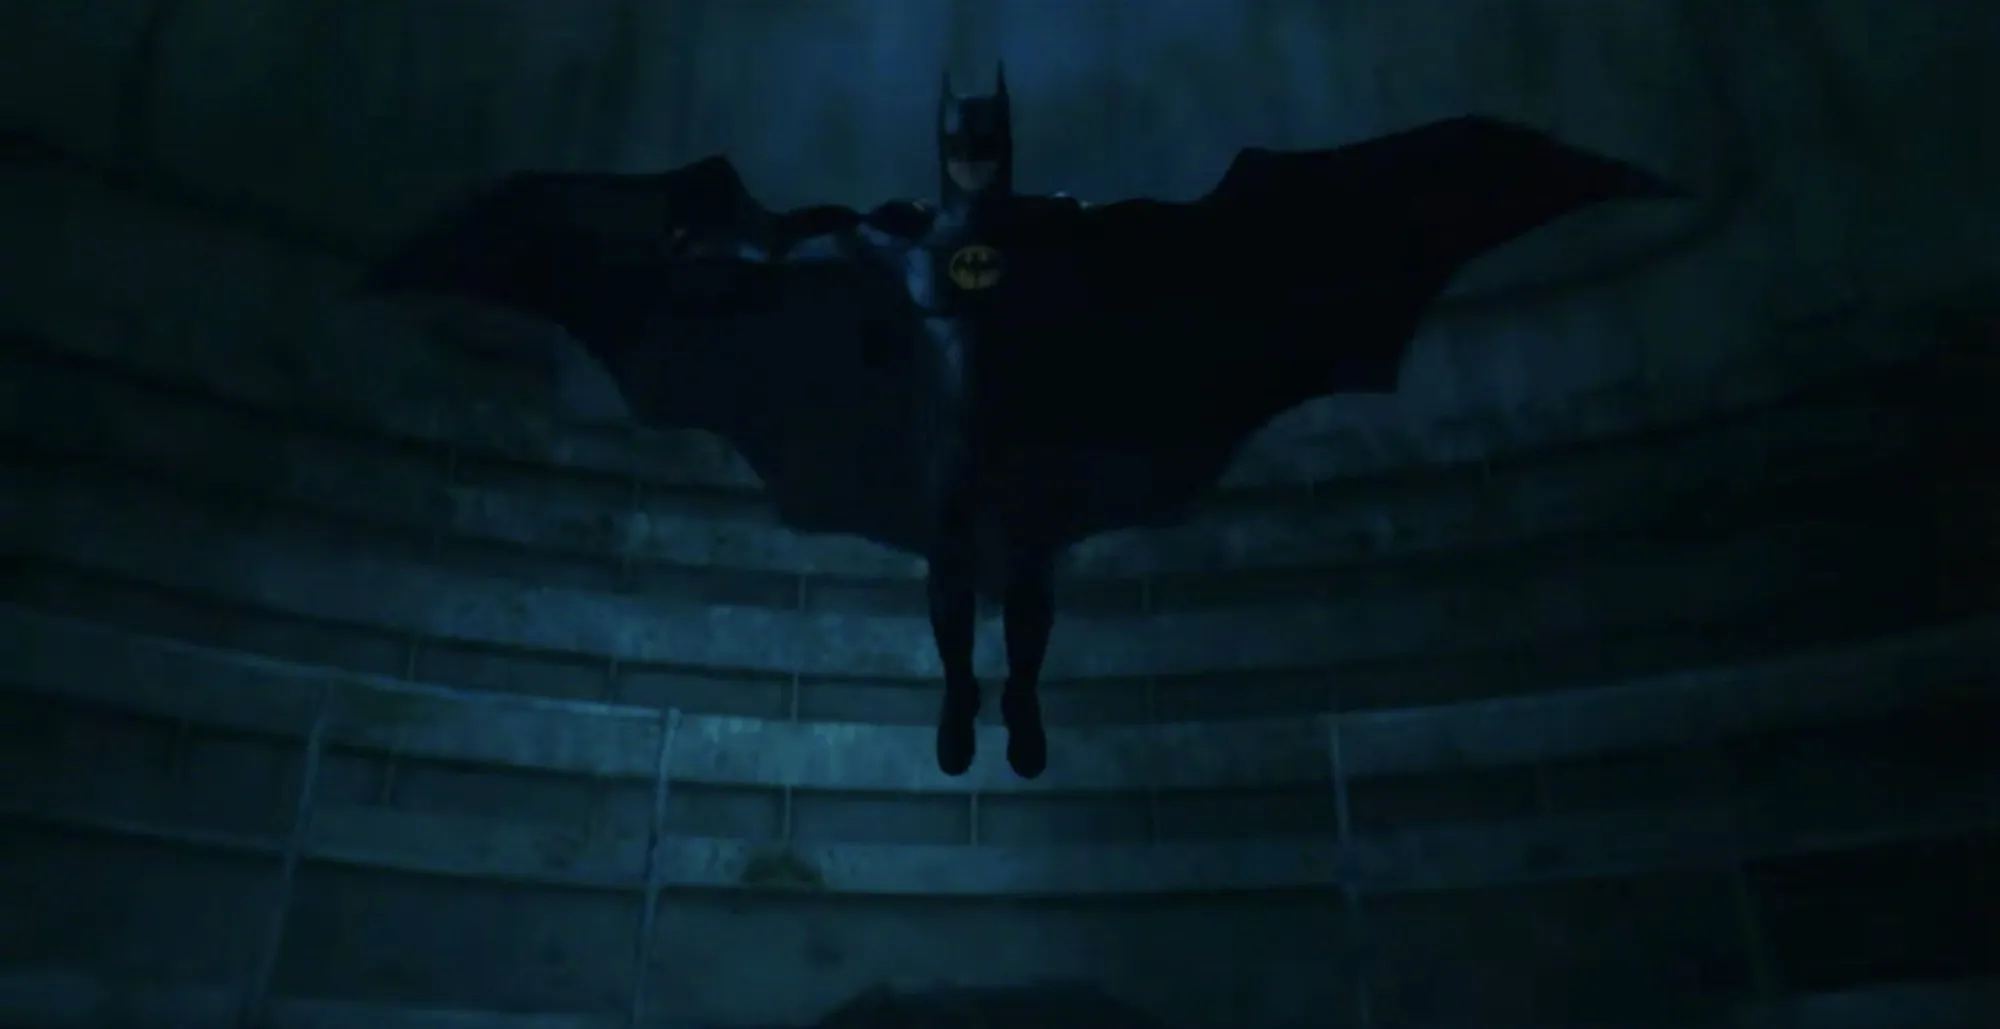 'The Flash' Official Trailer: Michael Keaton's Batman Returns | FMV6